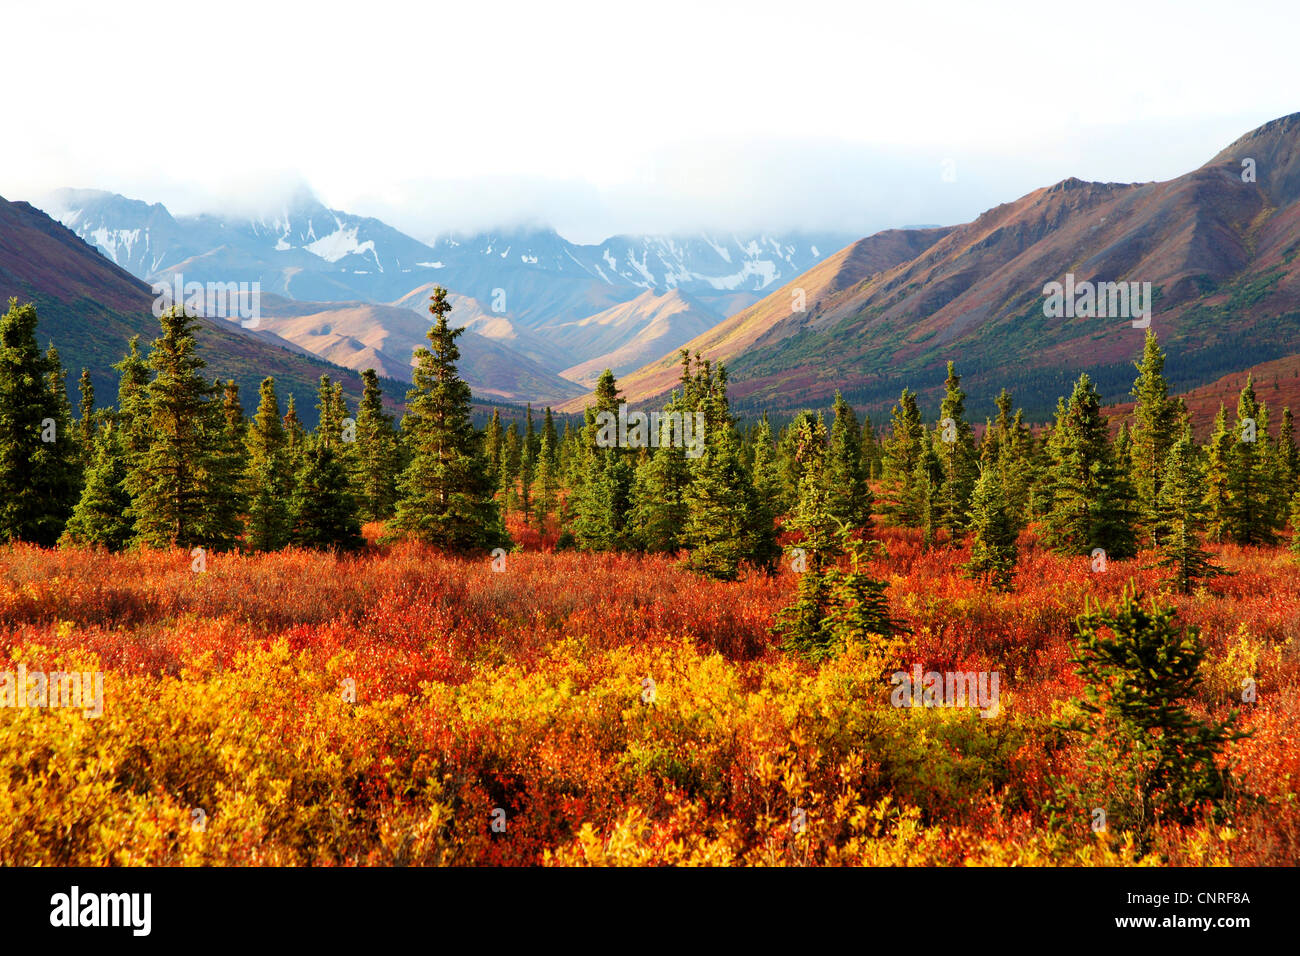 Alaska Denali National Park Landscape Photography